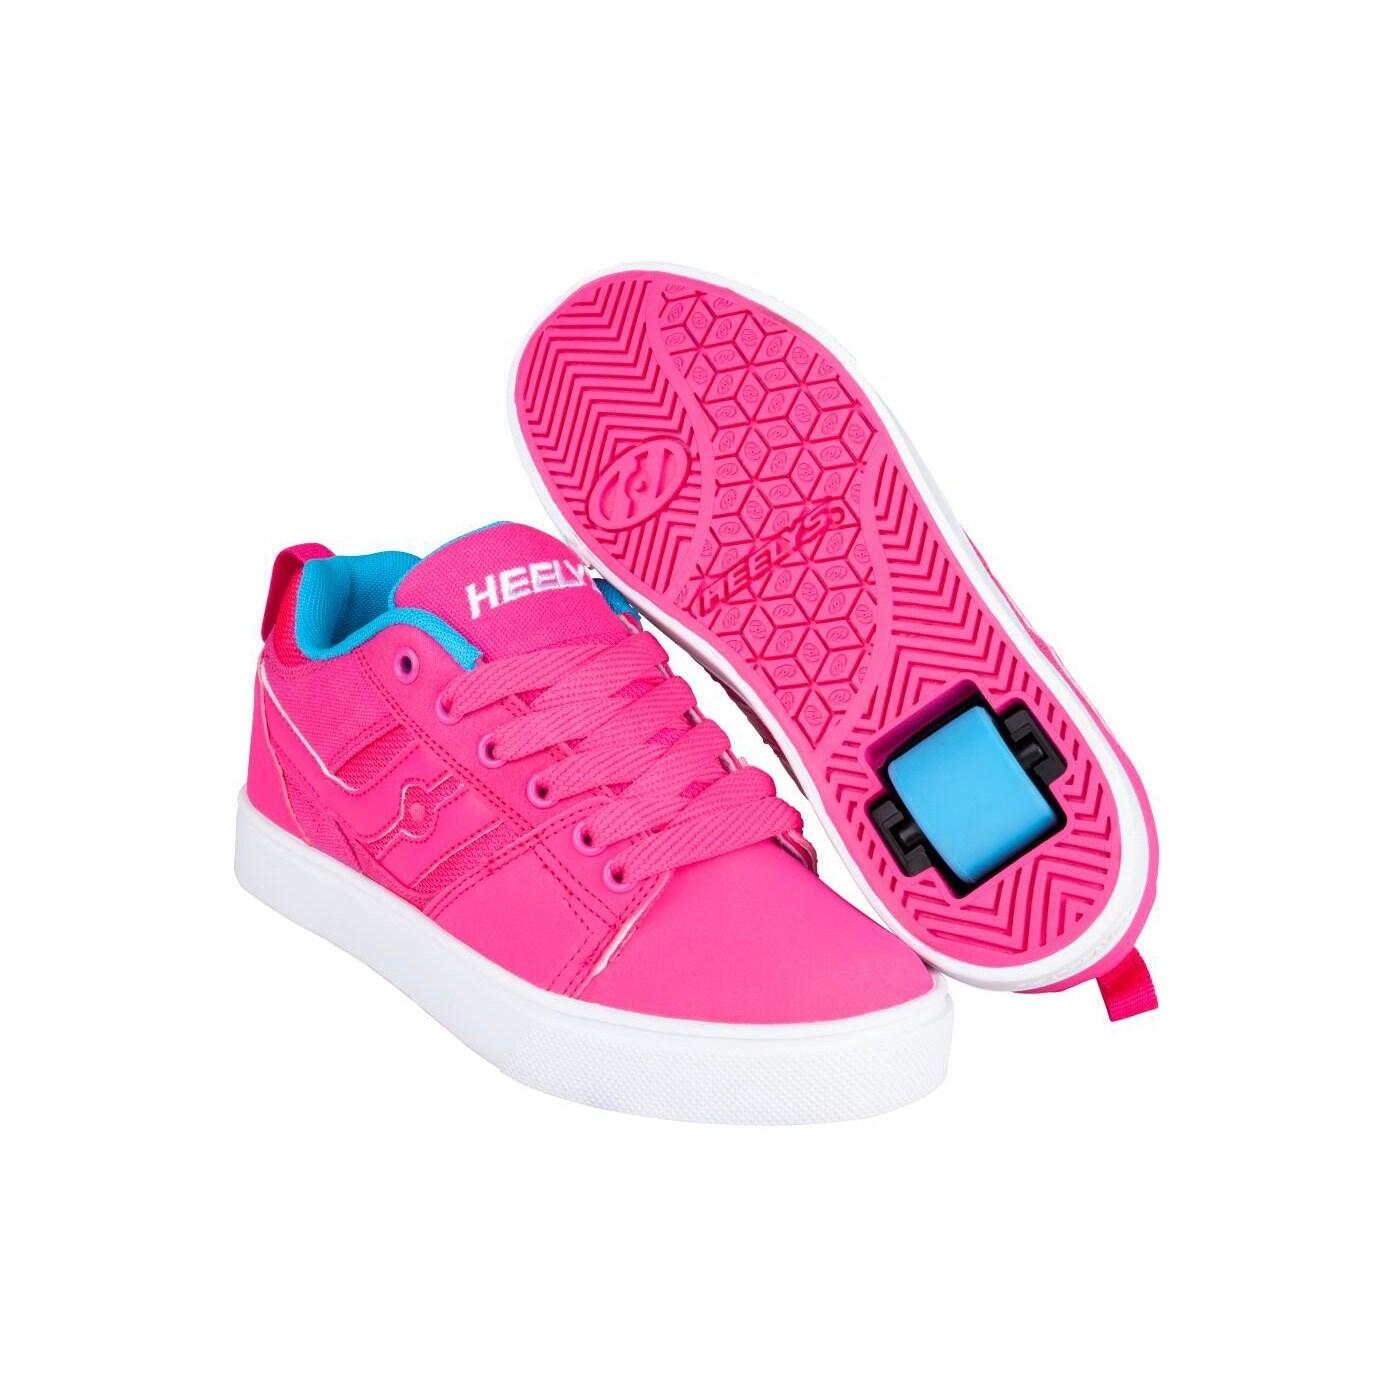 HEELYS Racer 20 Hot Pink/Light Blue Kids Heely Shoe